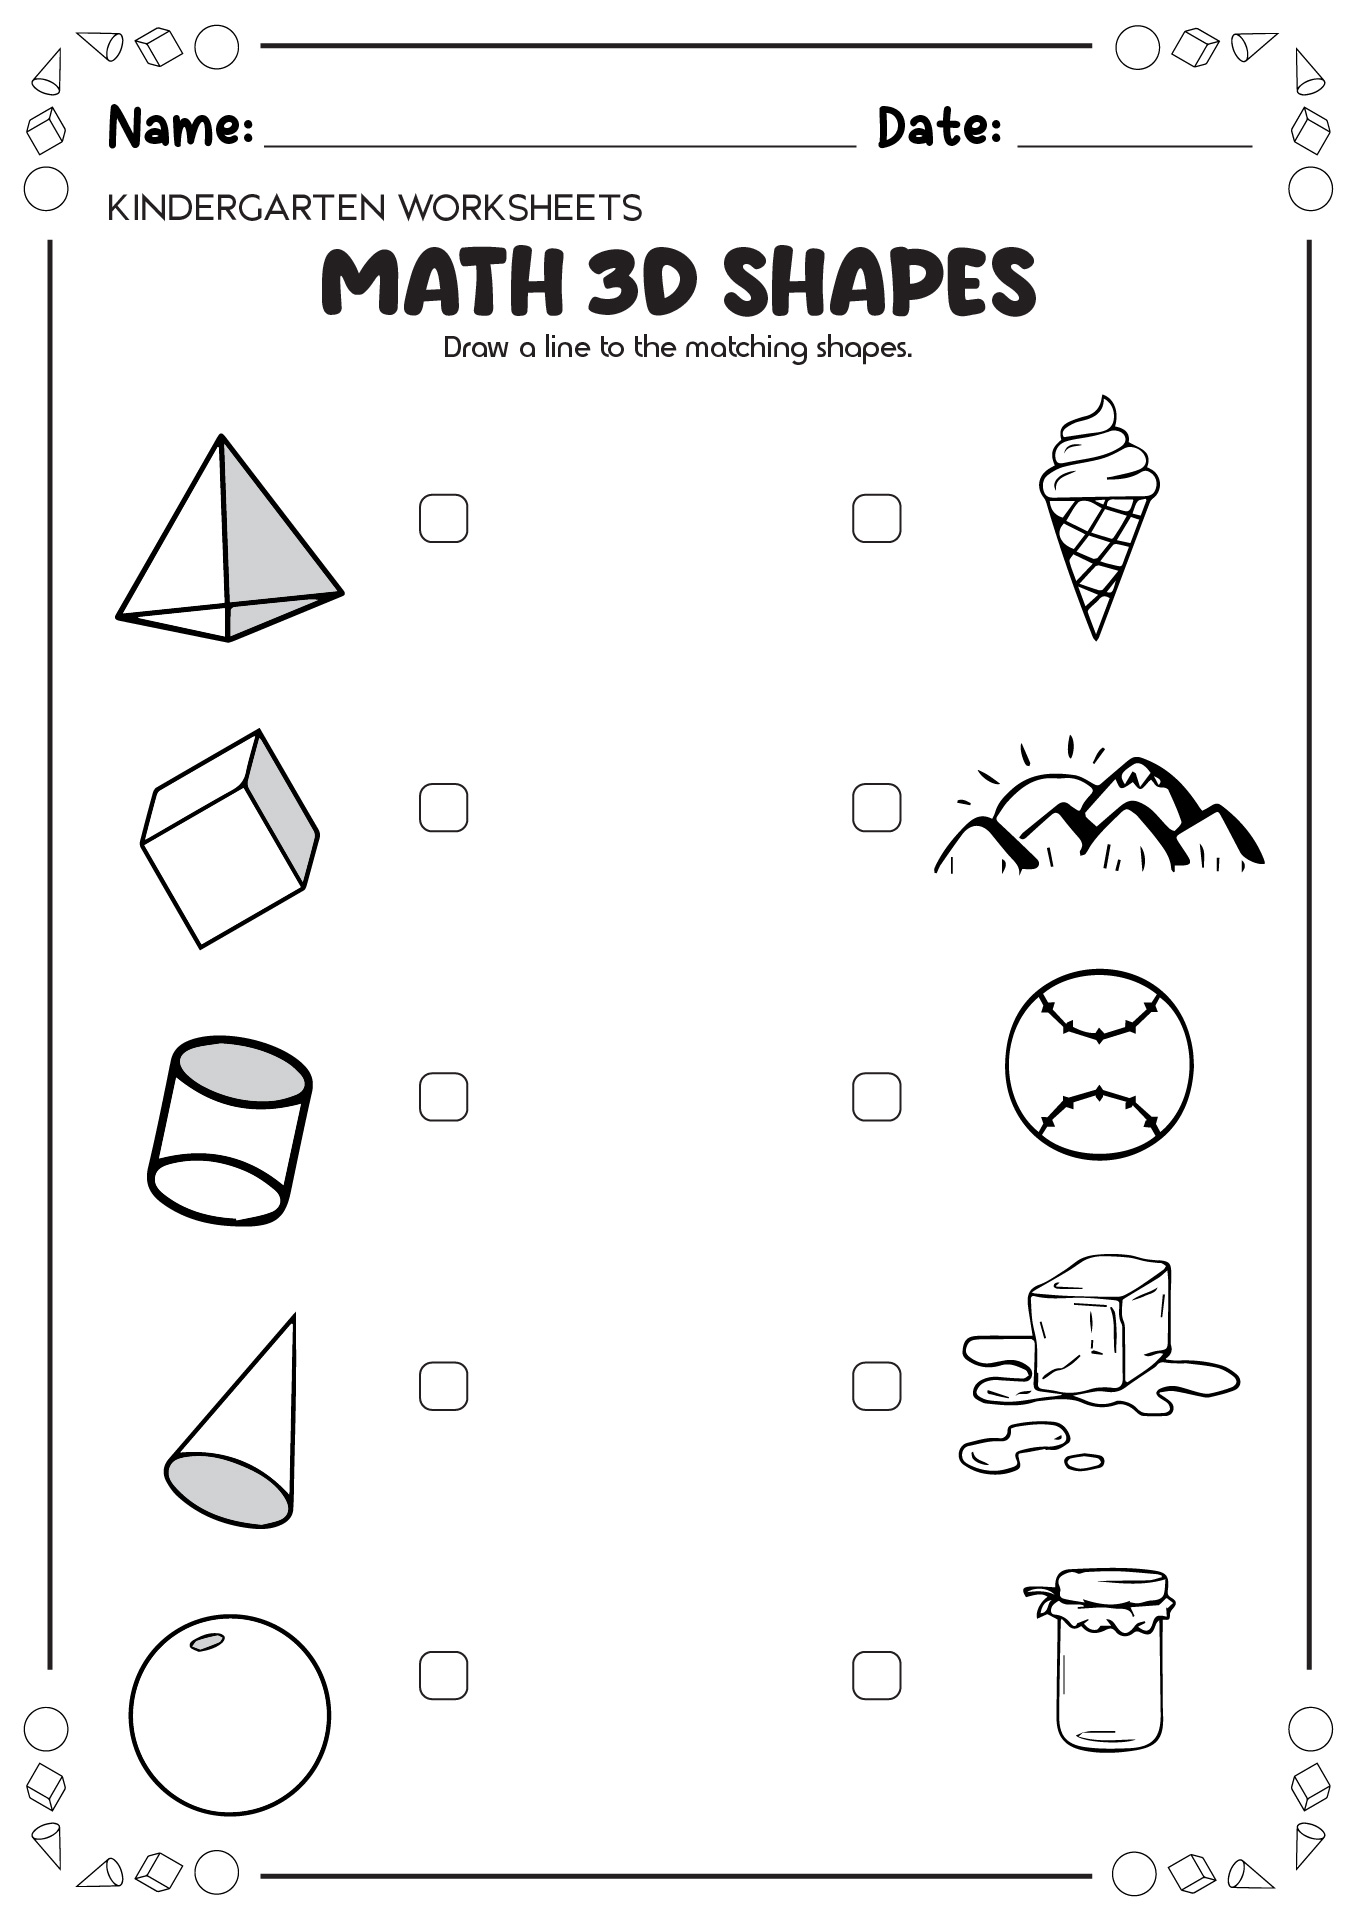 Math 3D Shapes Worksheet Image